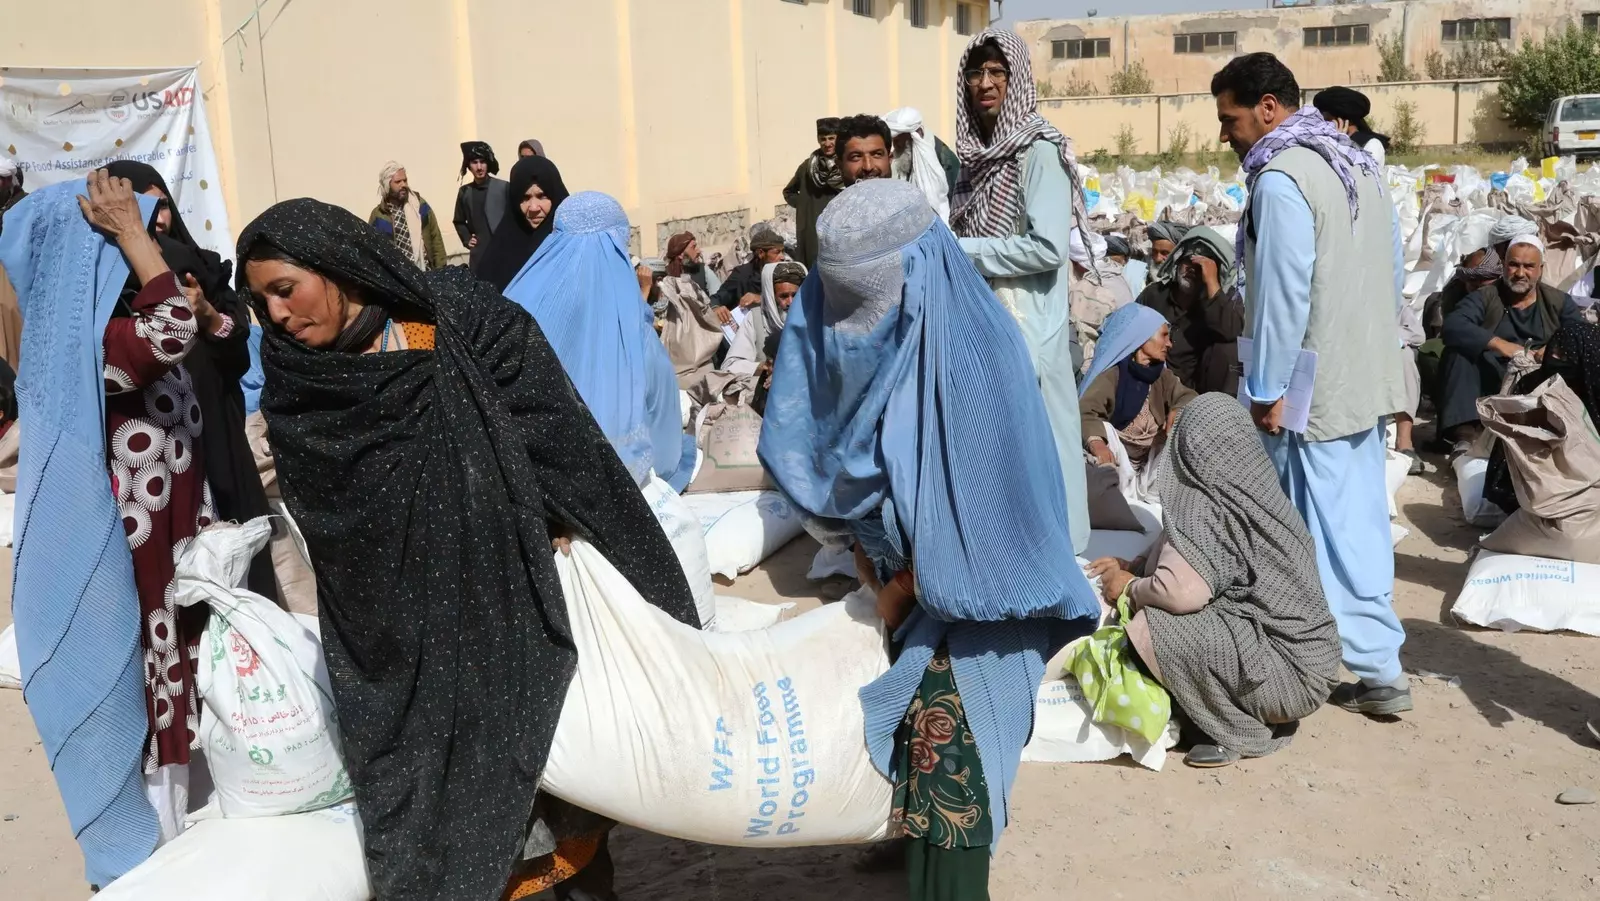 Los talibanes privan a las mujeres afganas de educación y medios para subsistir, según HRW